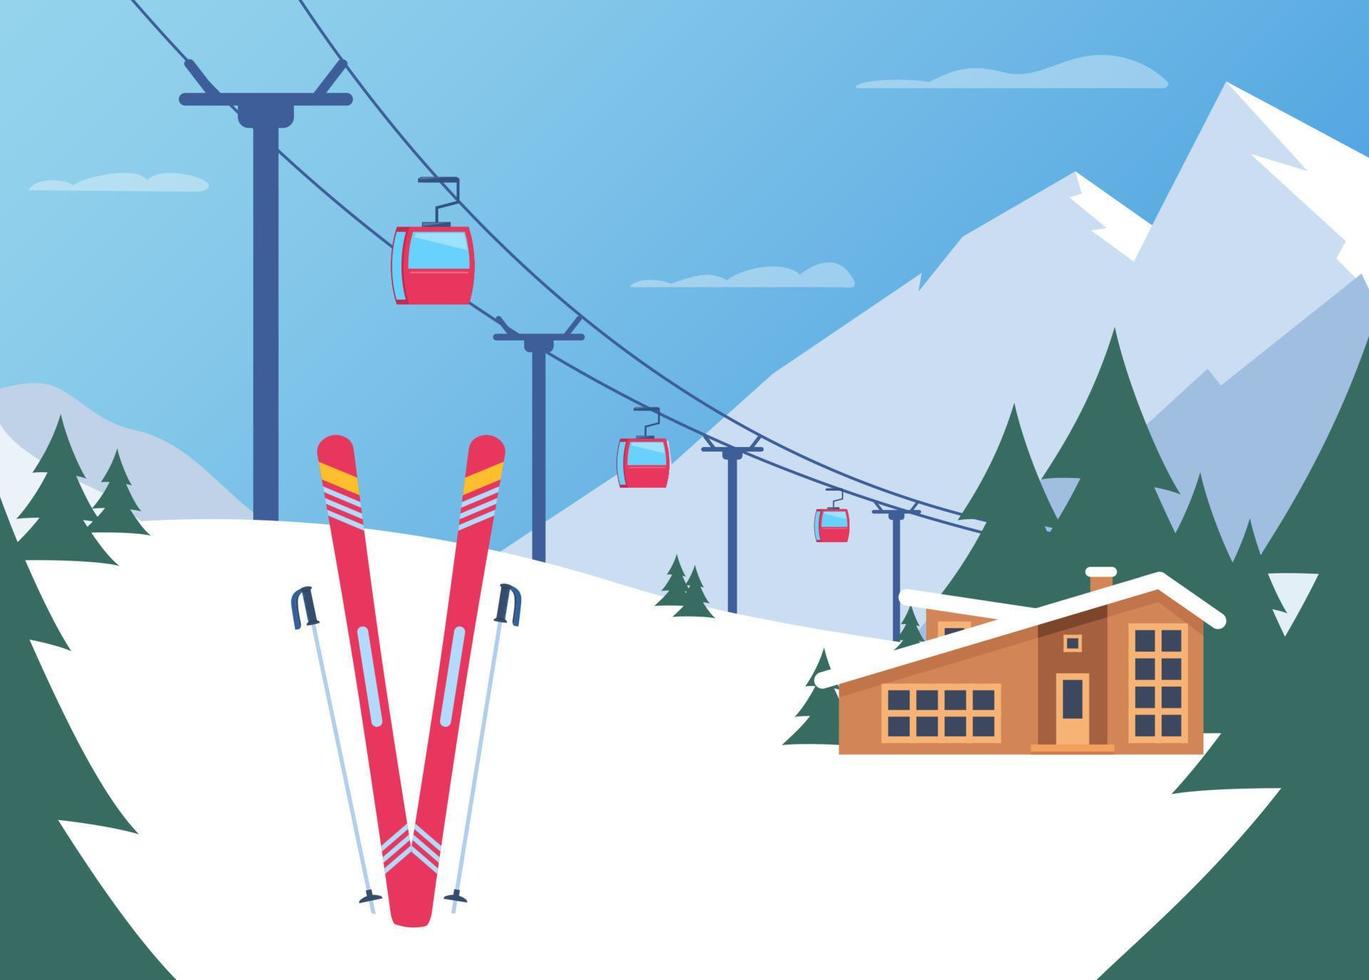 åka skidor tillflykt. vinter- berg landskap med stuga, åka skidor hiss. vinter- sporter semester baner. vektor illustration.